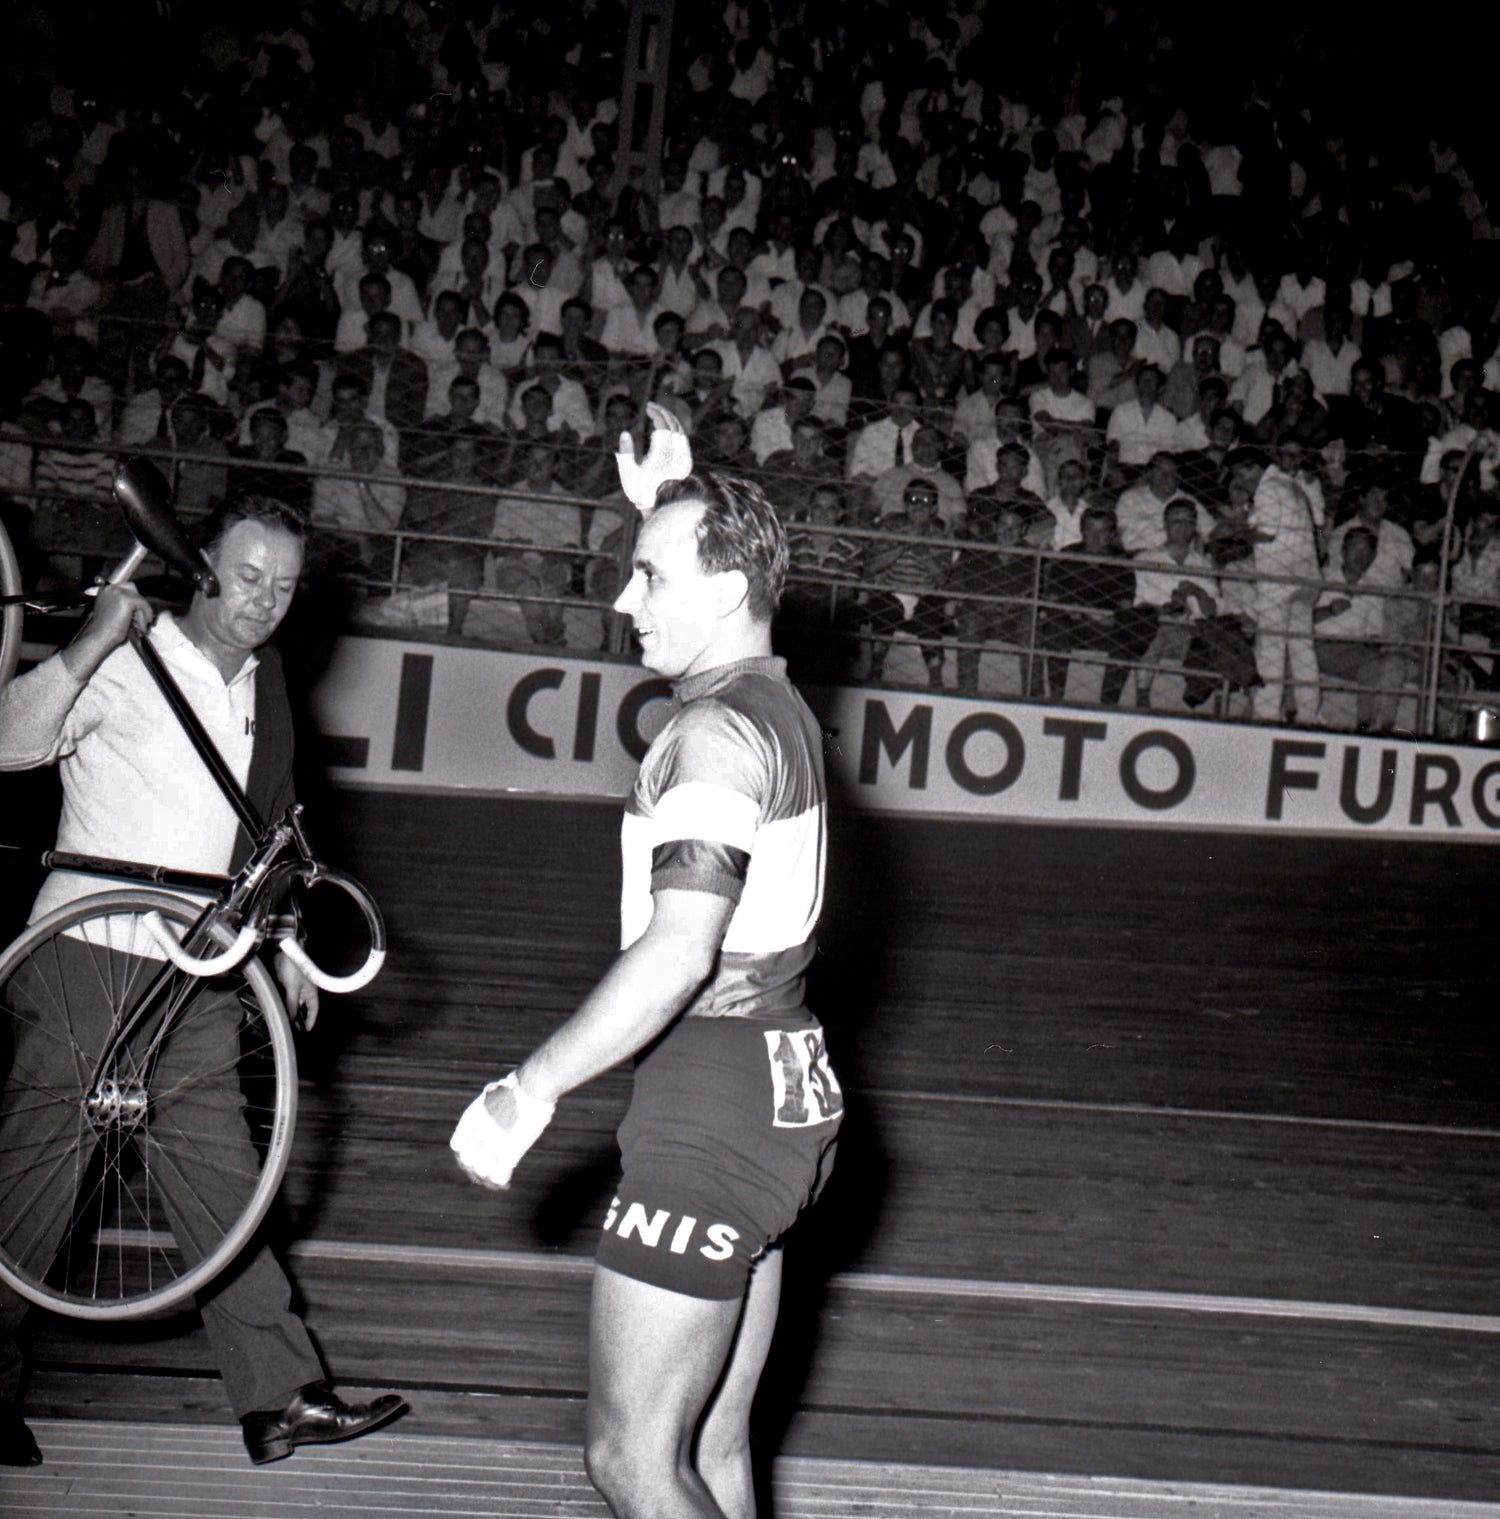 Antonio Maspes at the velodrome